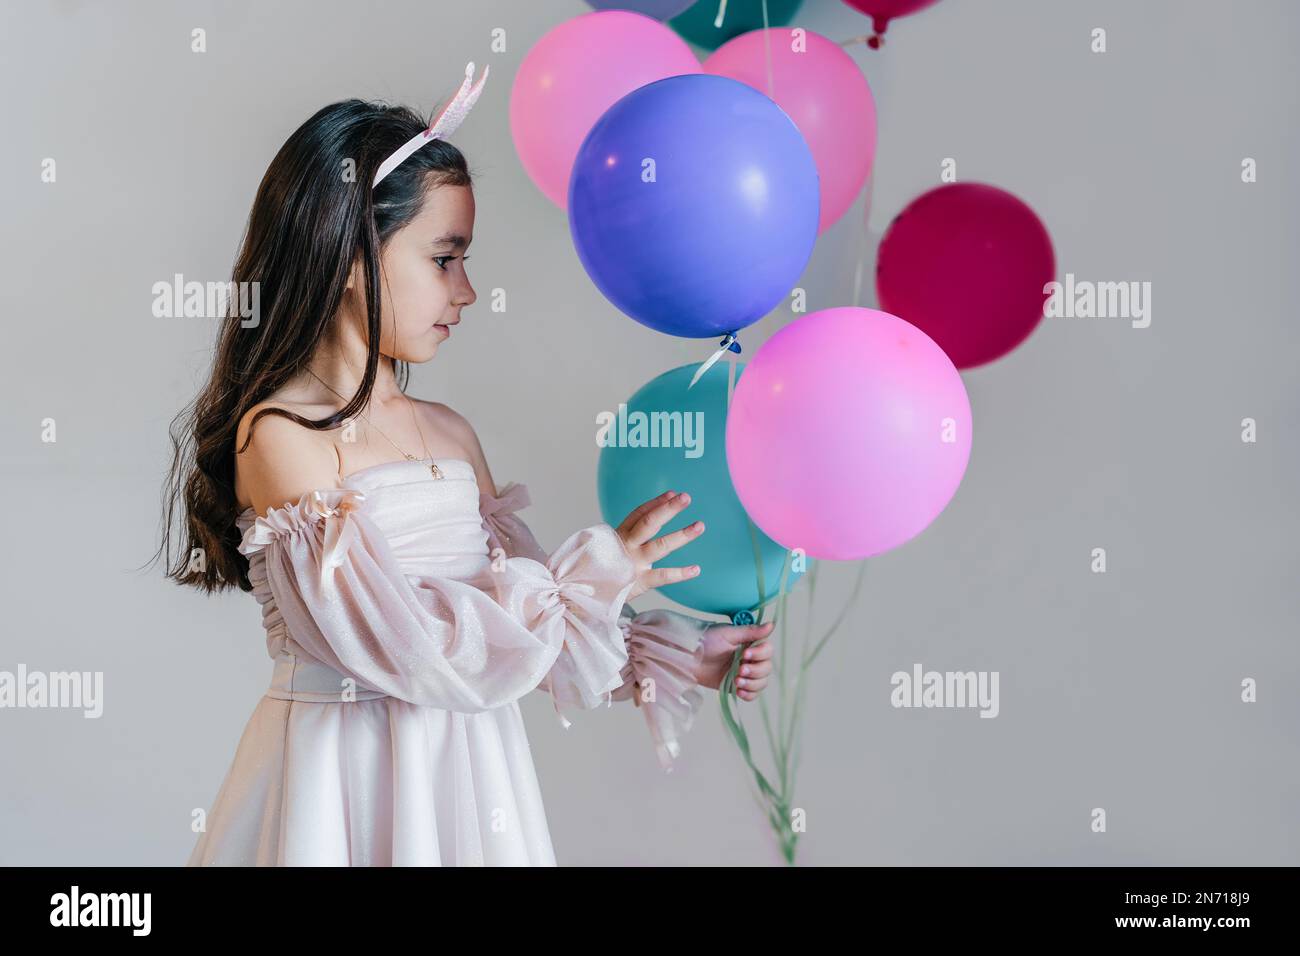 Hübsches, kleines brünettes Mädchen in einem pinkfarbenen Kleid und einer Krone mit blauen, grünen und pinken Ballons. Stockfoto